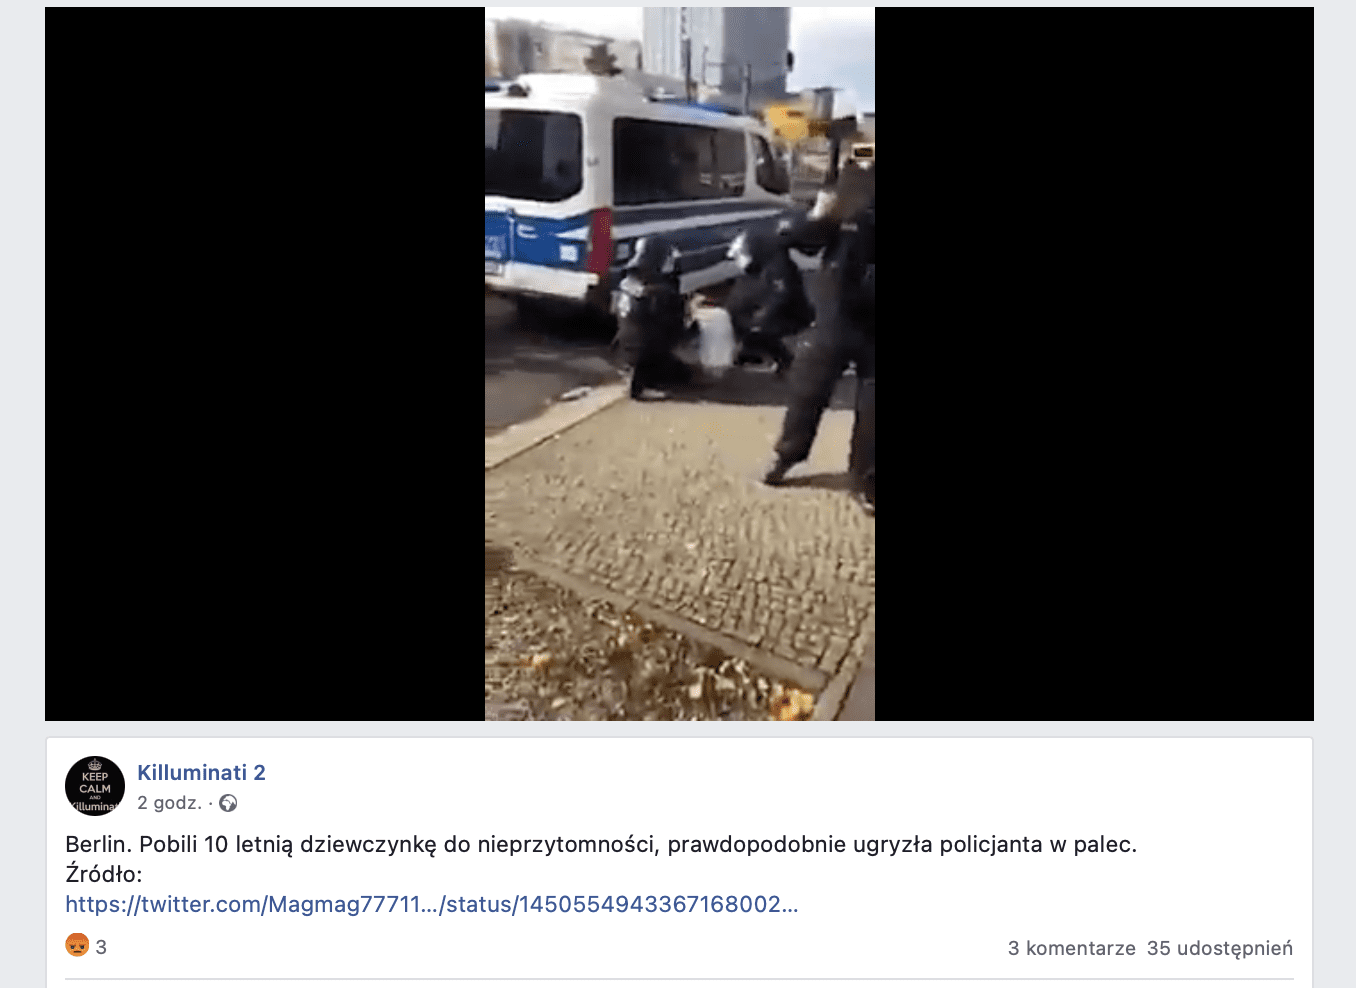 Zrzut ekranu z Facebooka. Na zdjęciu widzimy dwóch policjantów klęczących przy siedzącej na ziemi kobiecie.